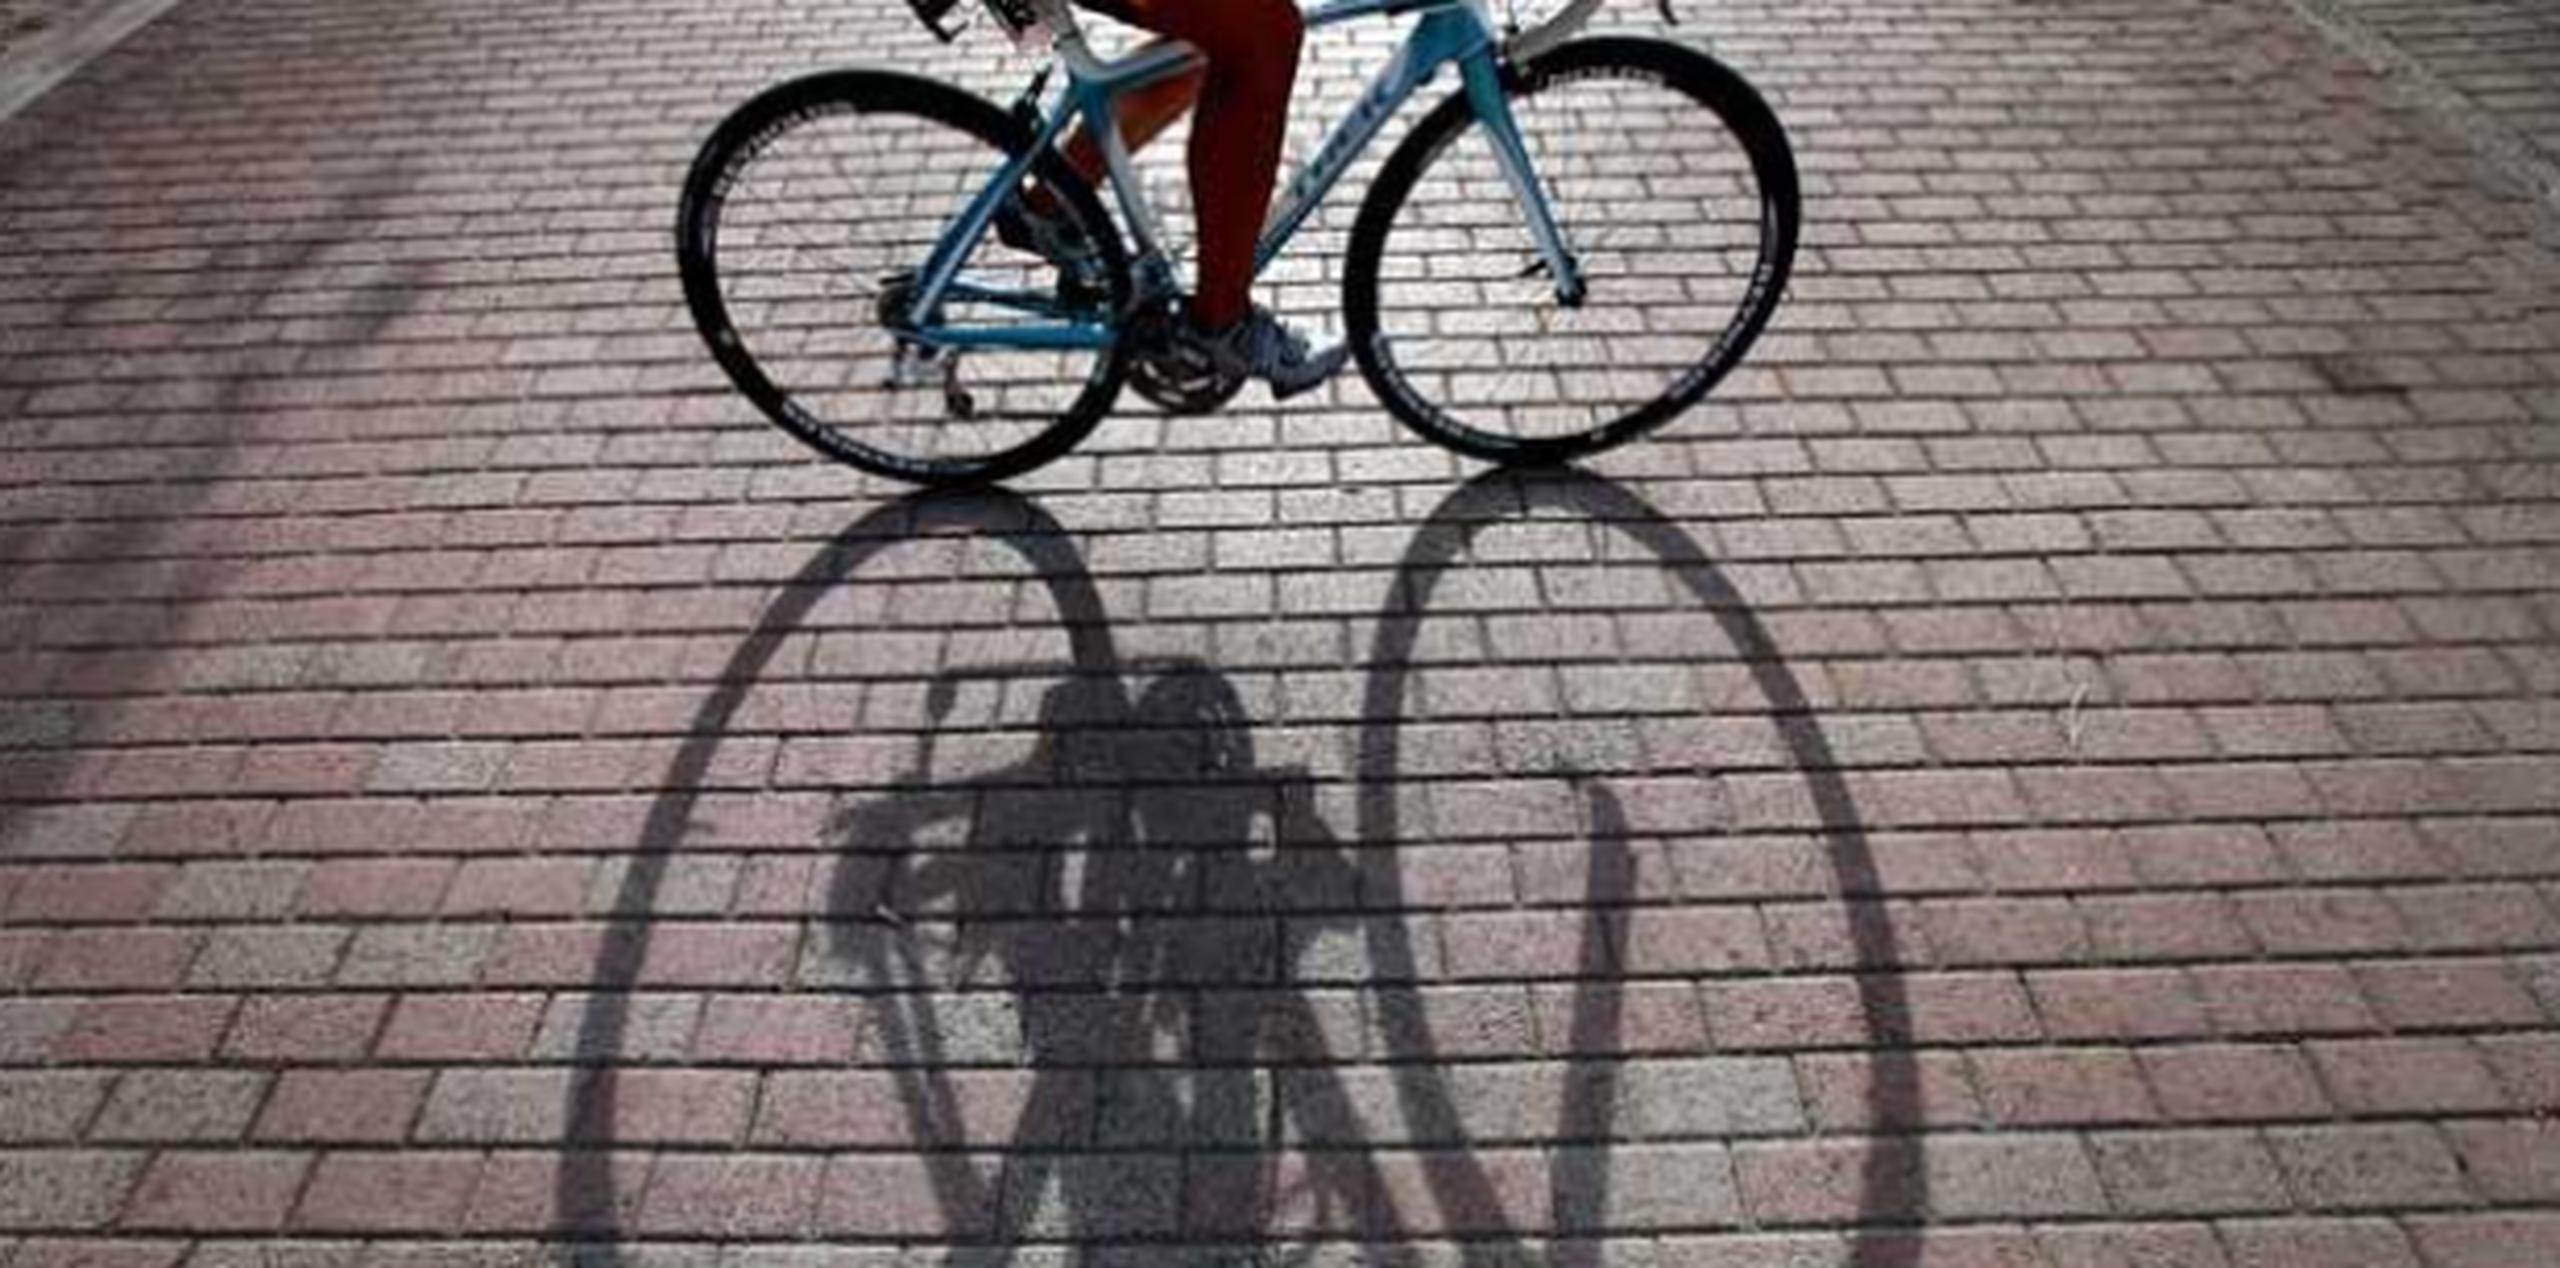 En esta región y en otras partes de España se han registrado numerosos incidentes de robos de bicicletas. (Archivo)